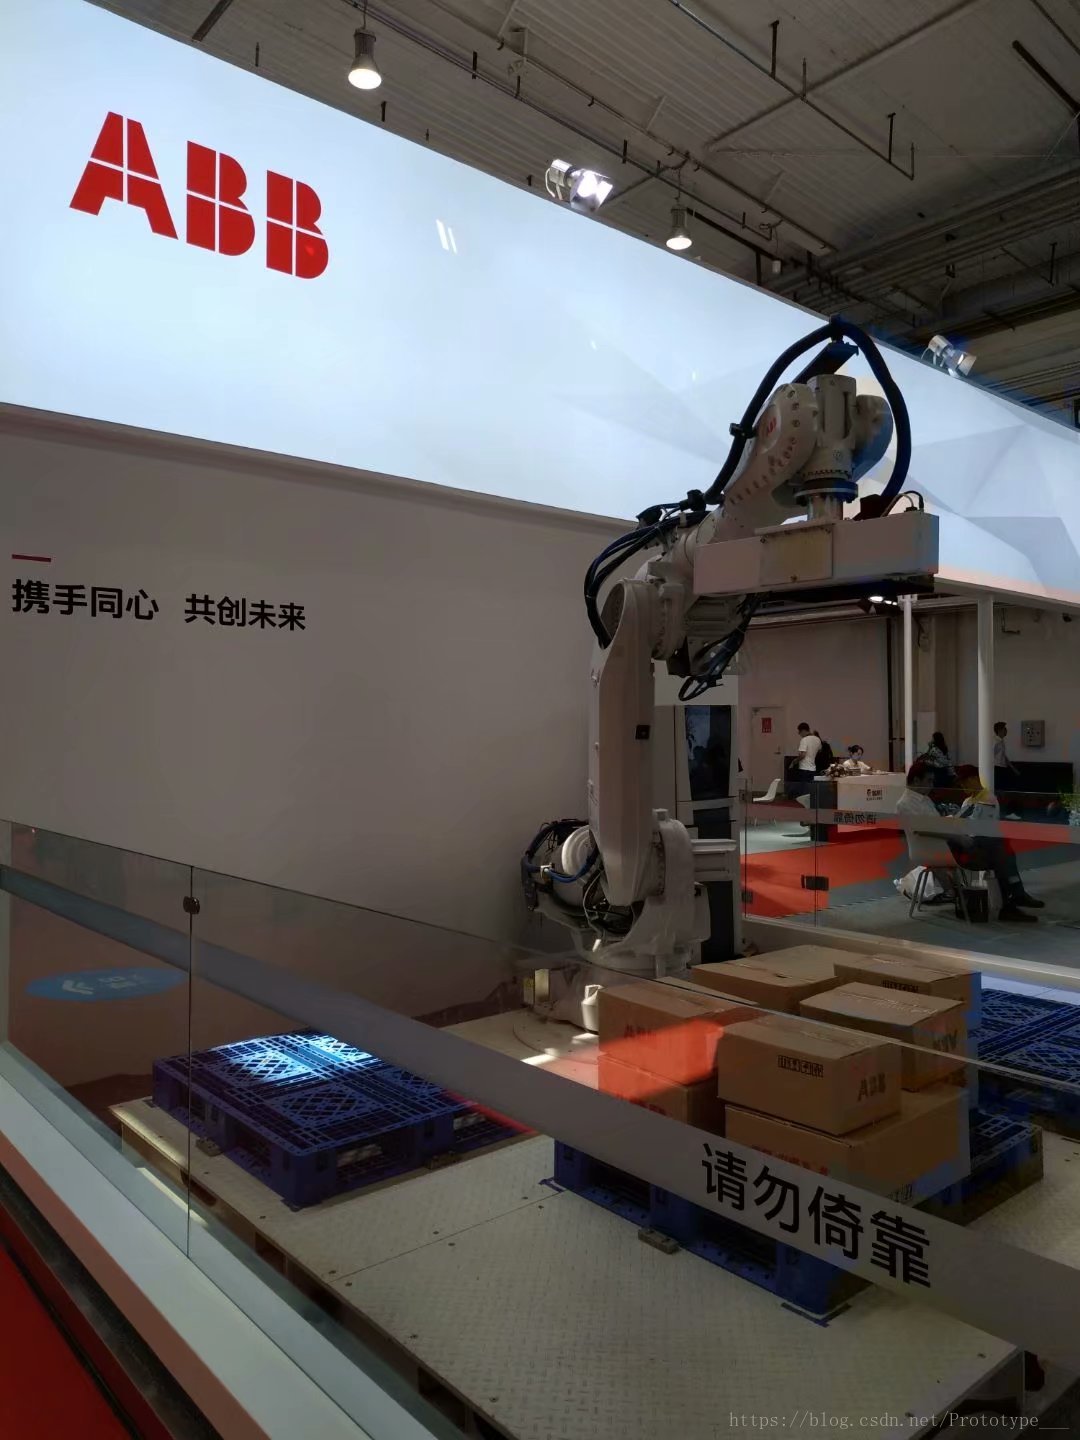 ABB集团的工业机器人